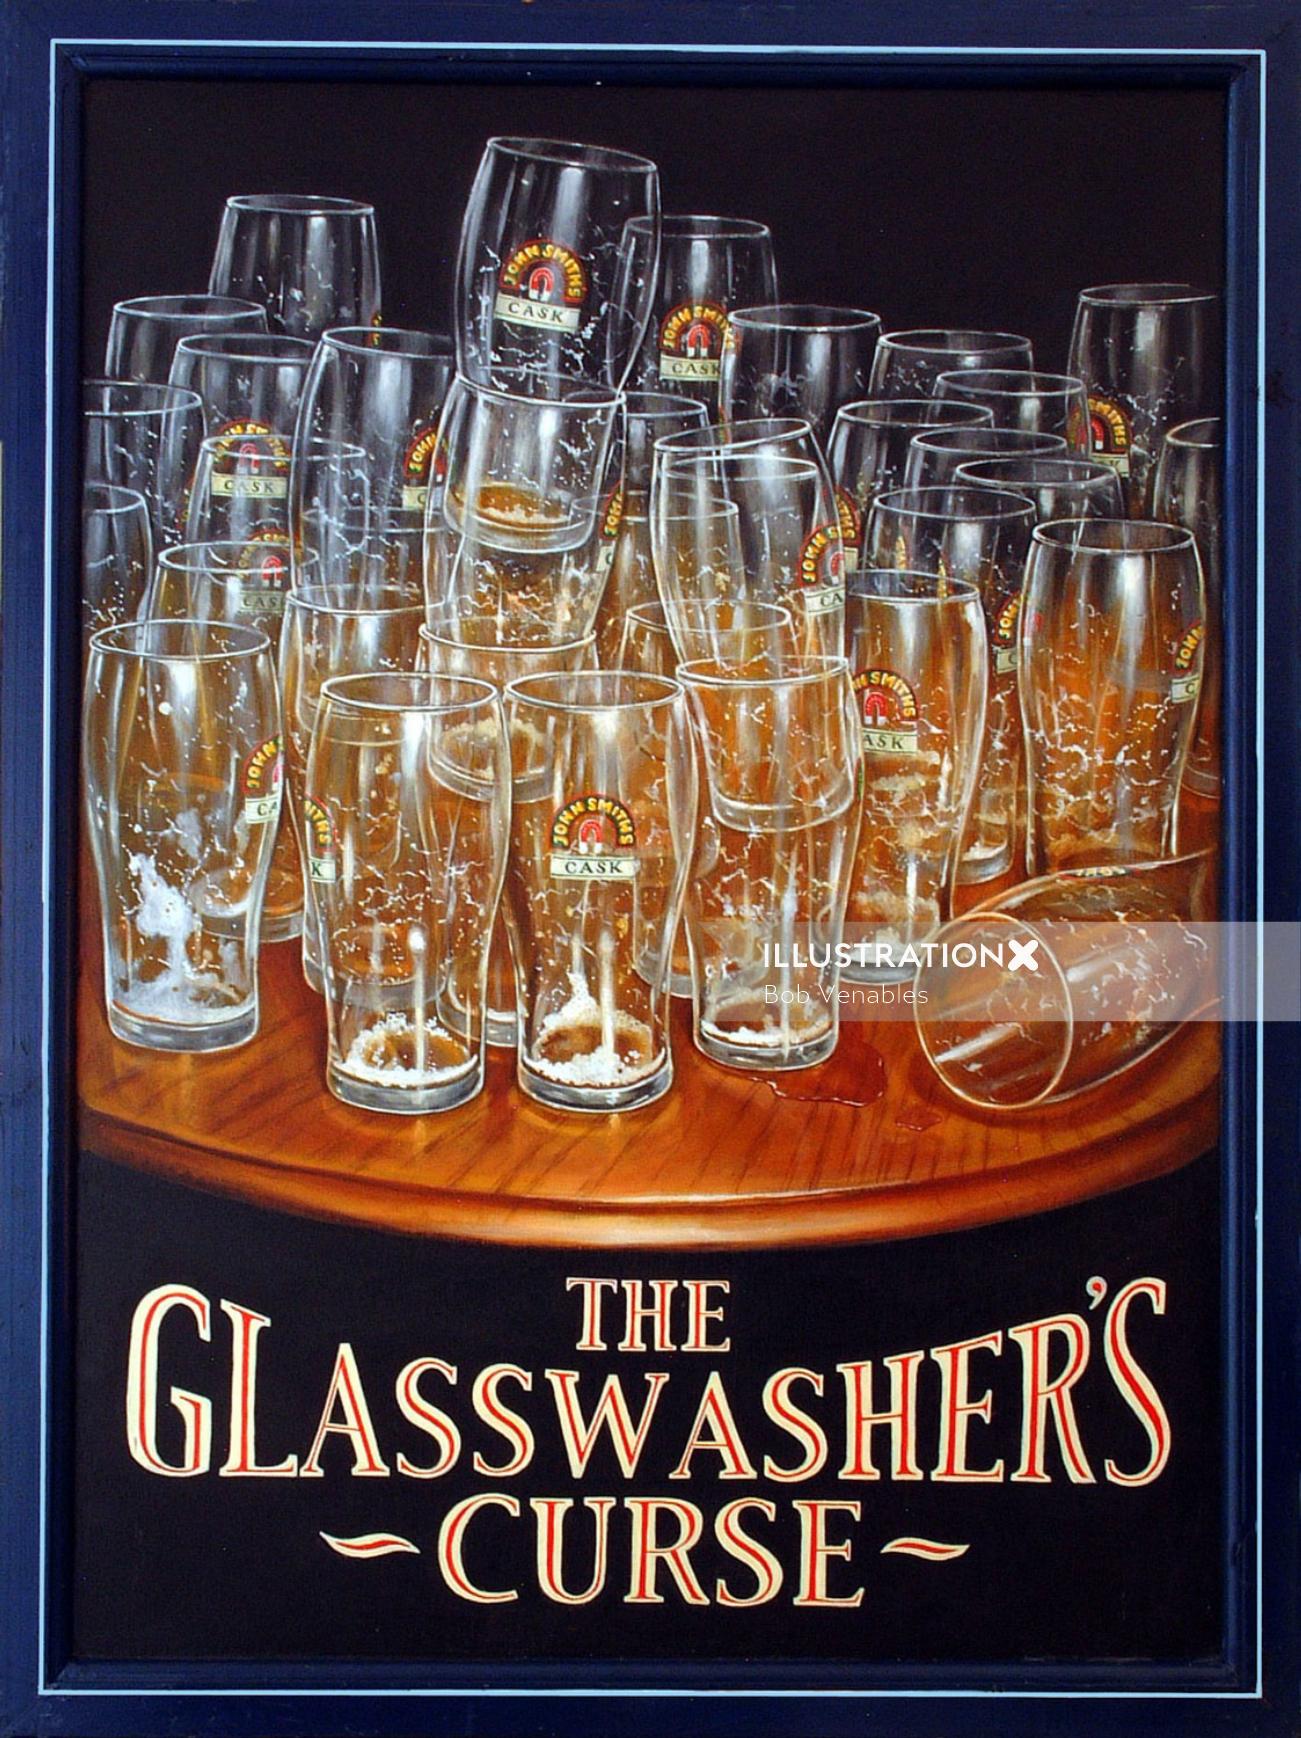 Arte do pôster da maldição do Glasswasher